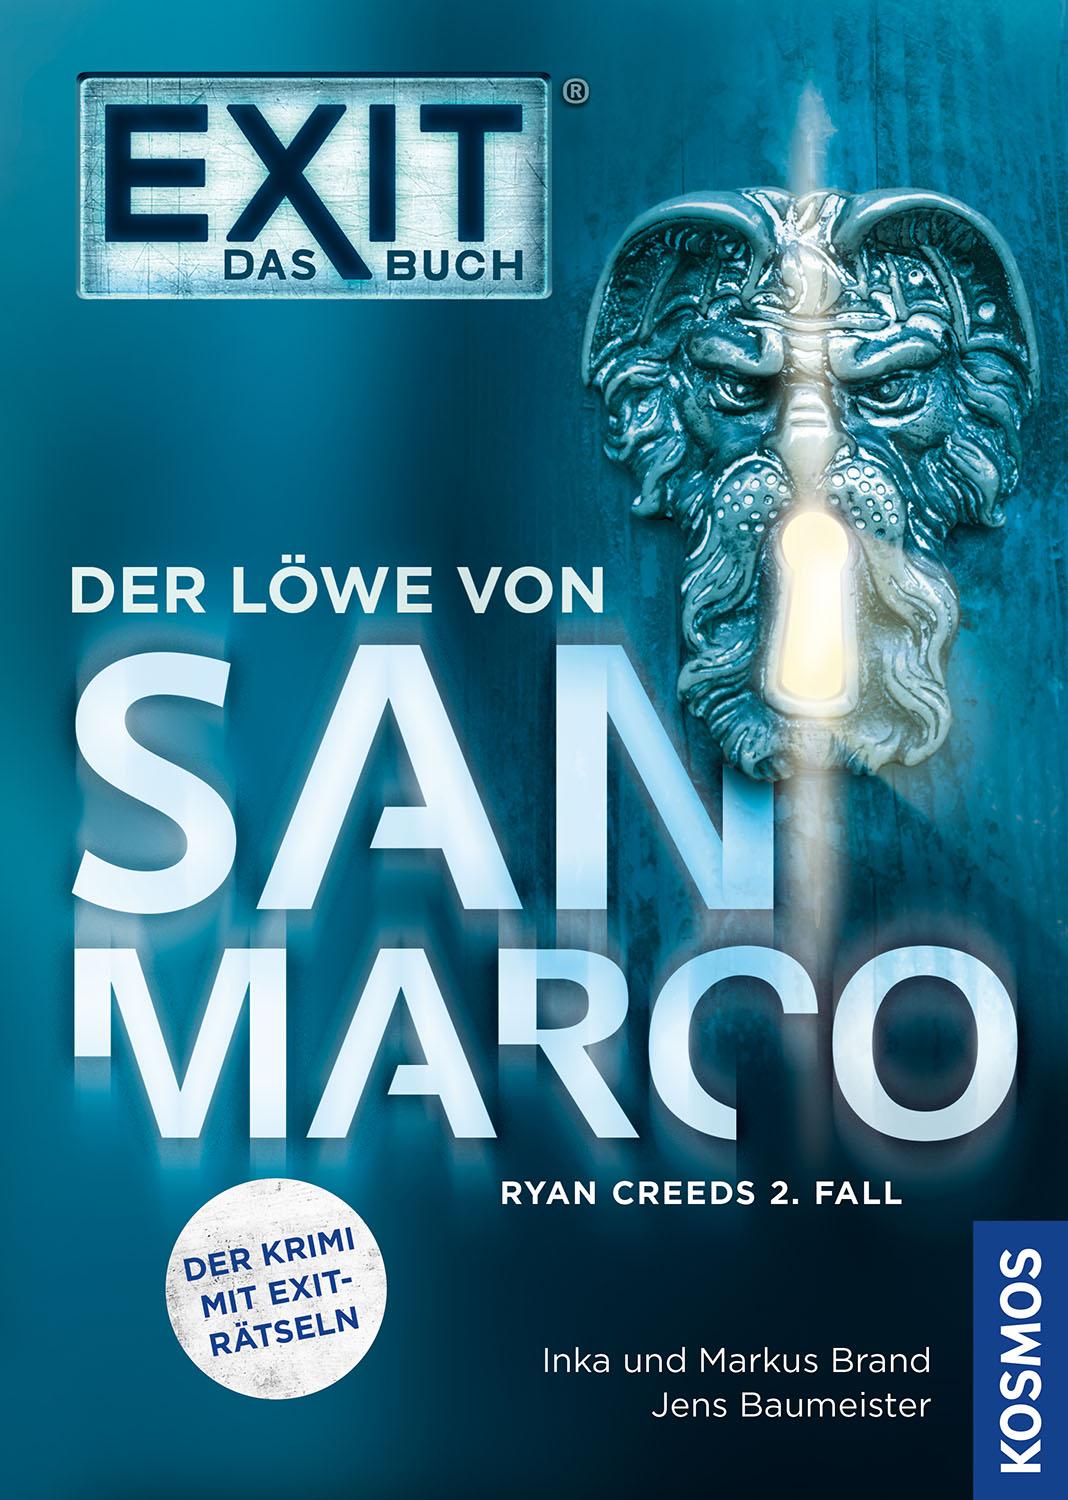 Exit Das Buch Der Löwe von San Marco